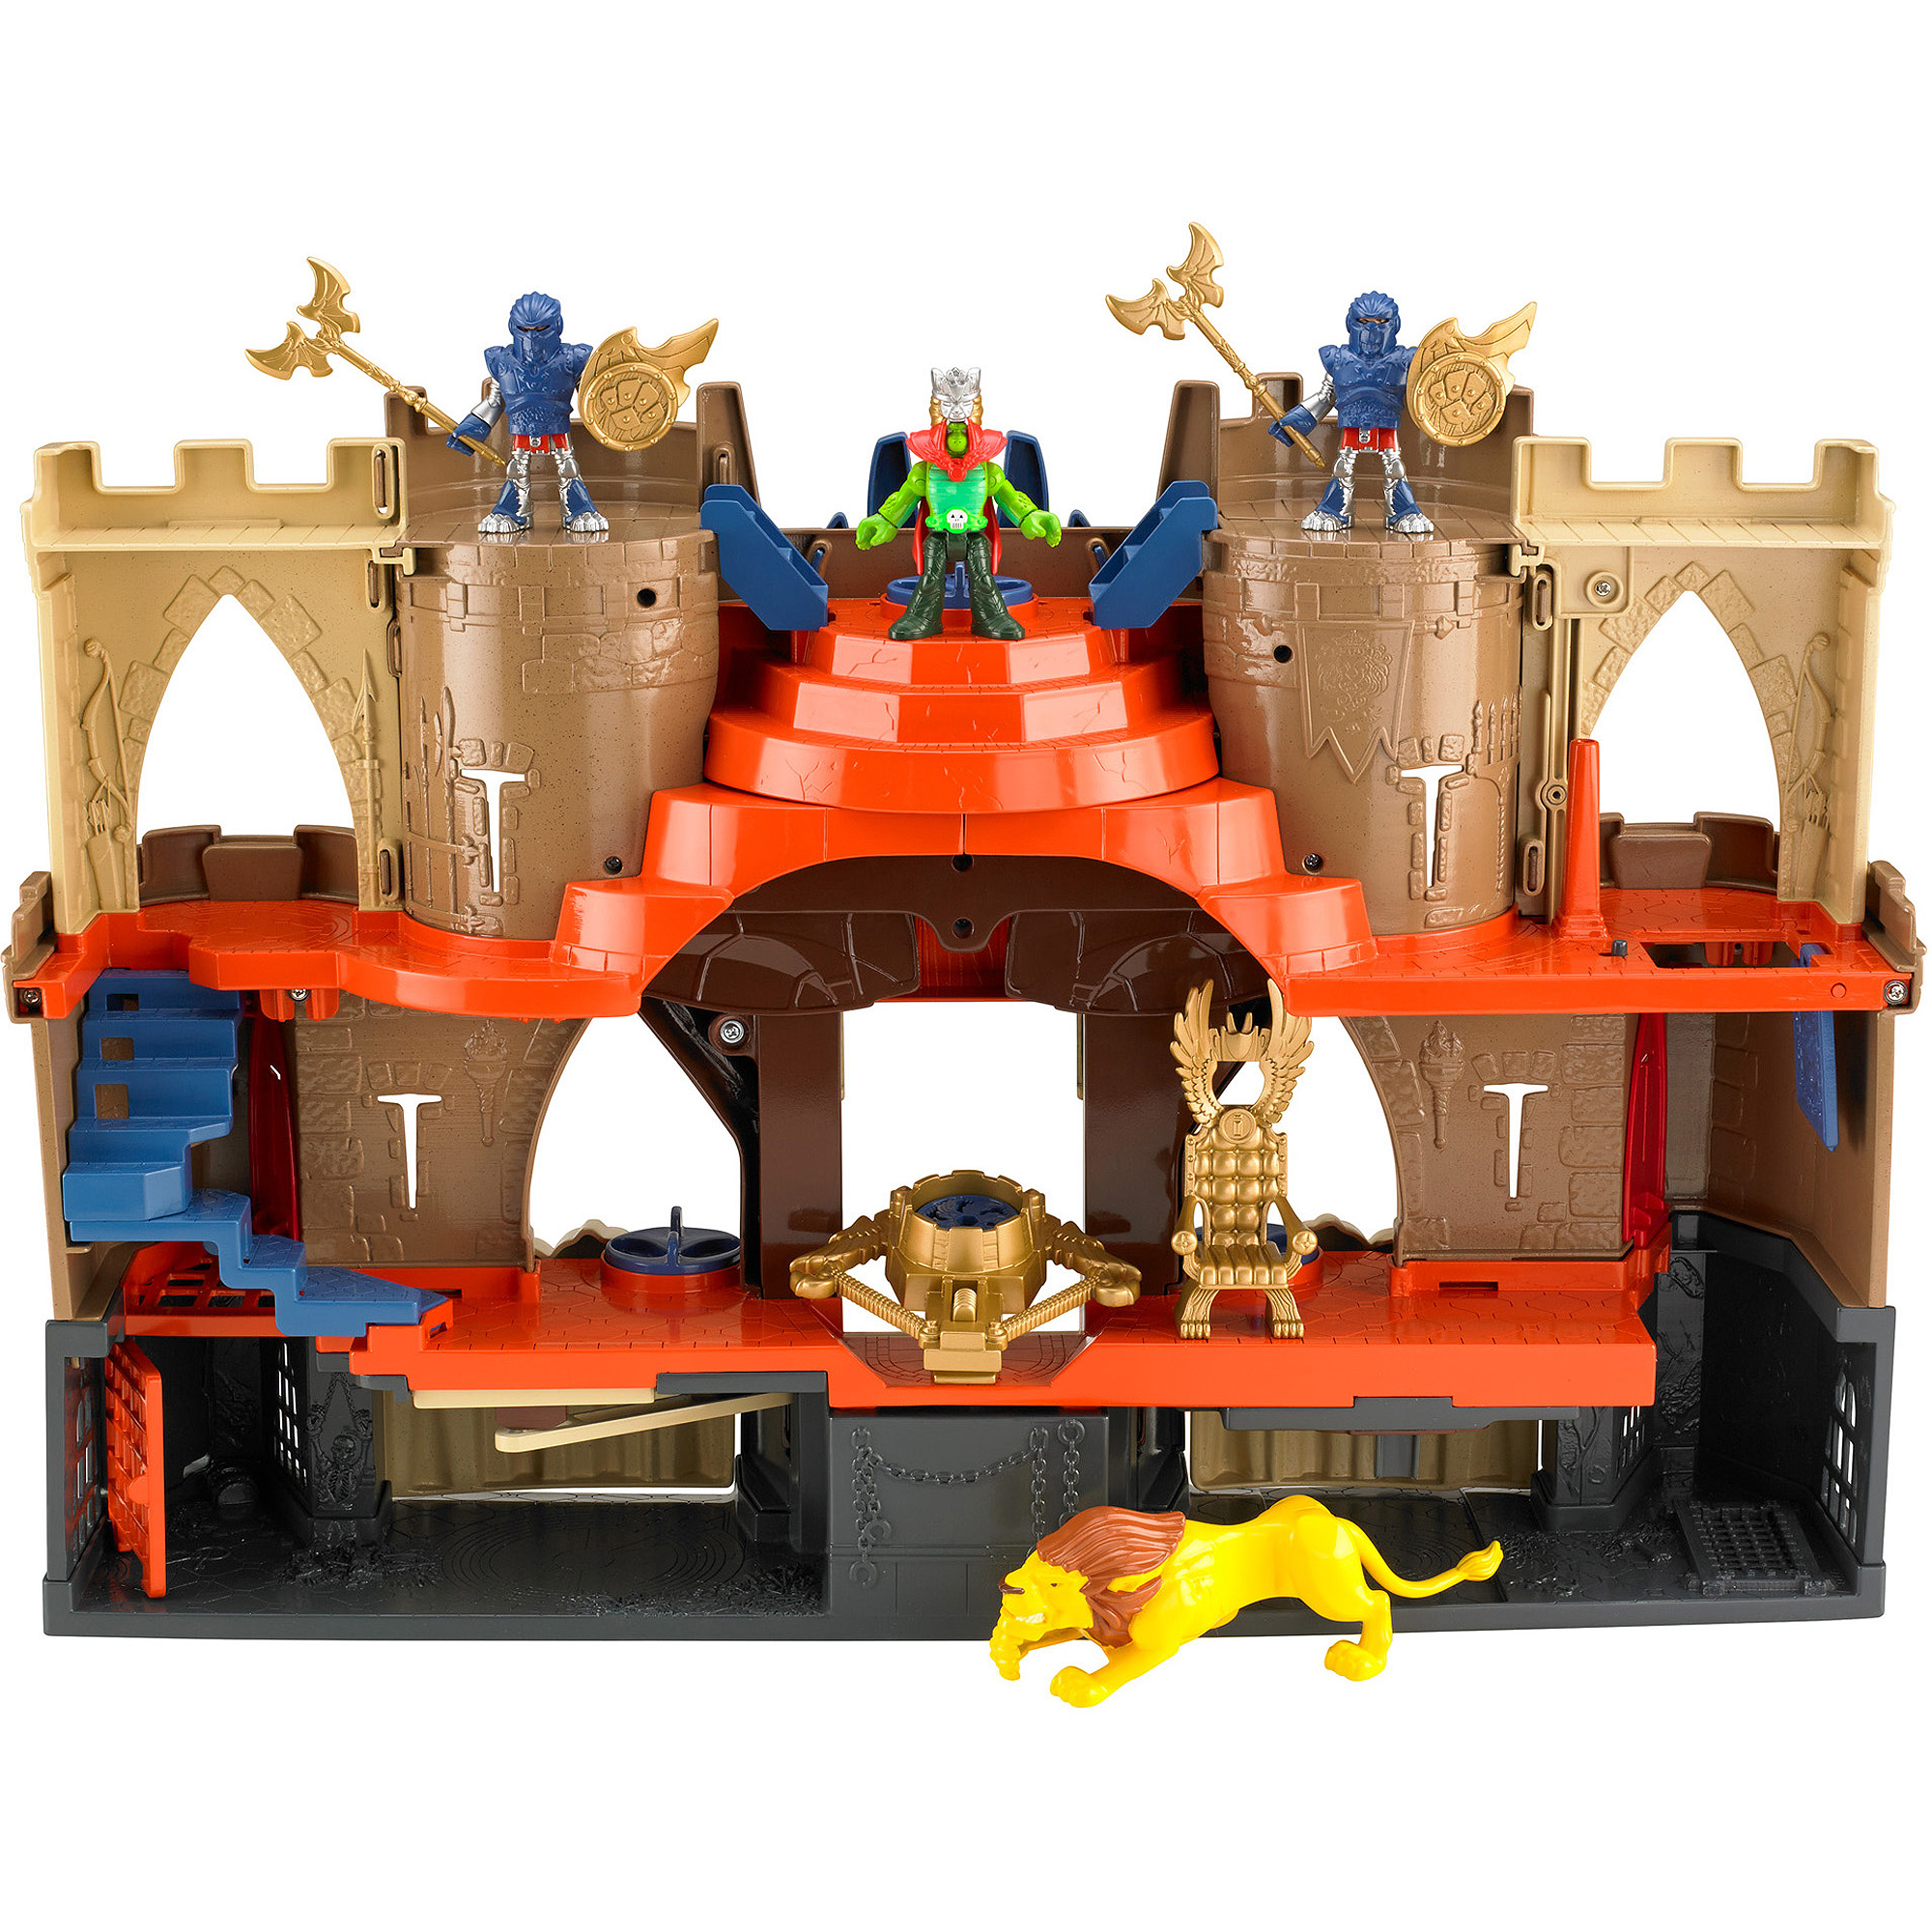 Imaginext New Lions Den Castle - image 4 of 4